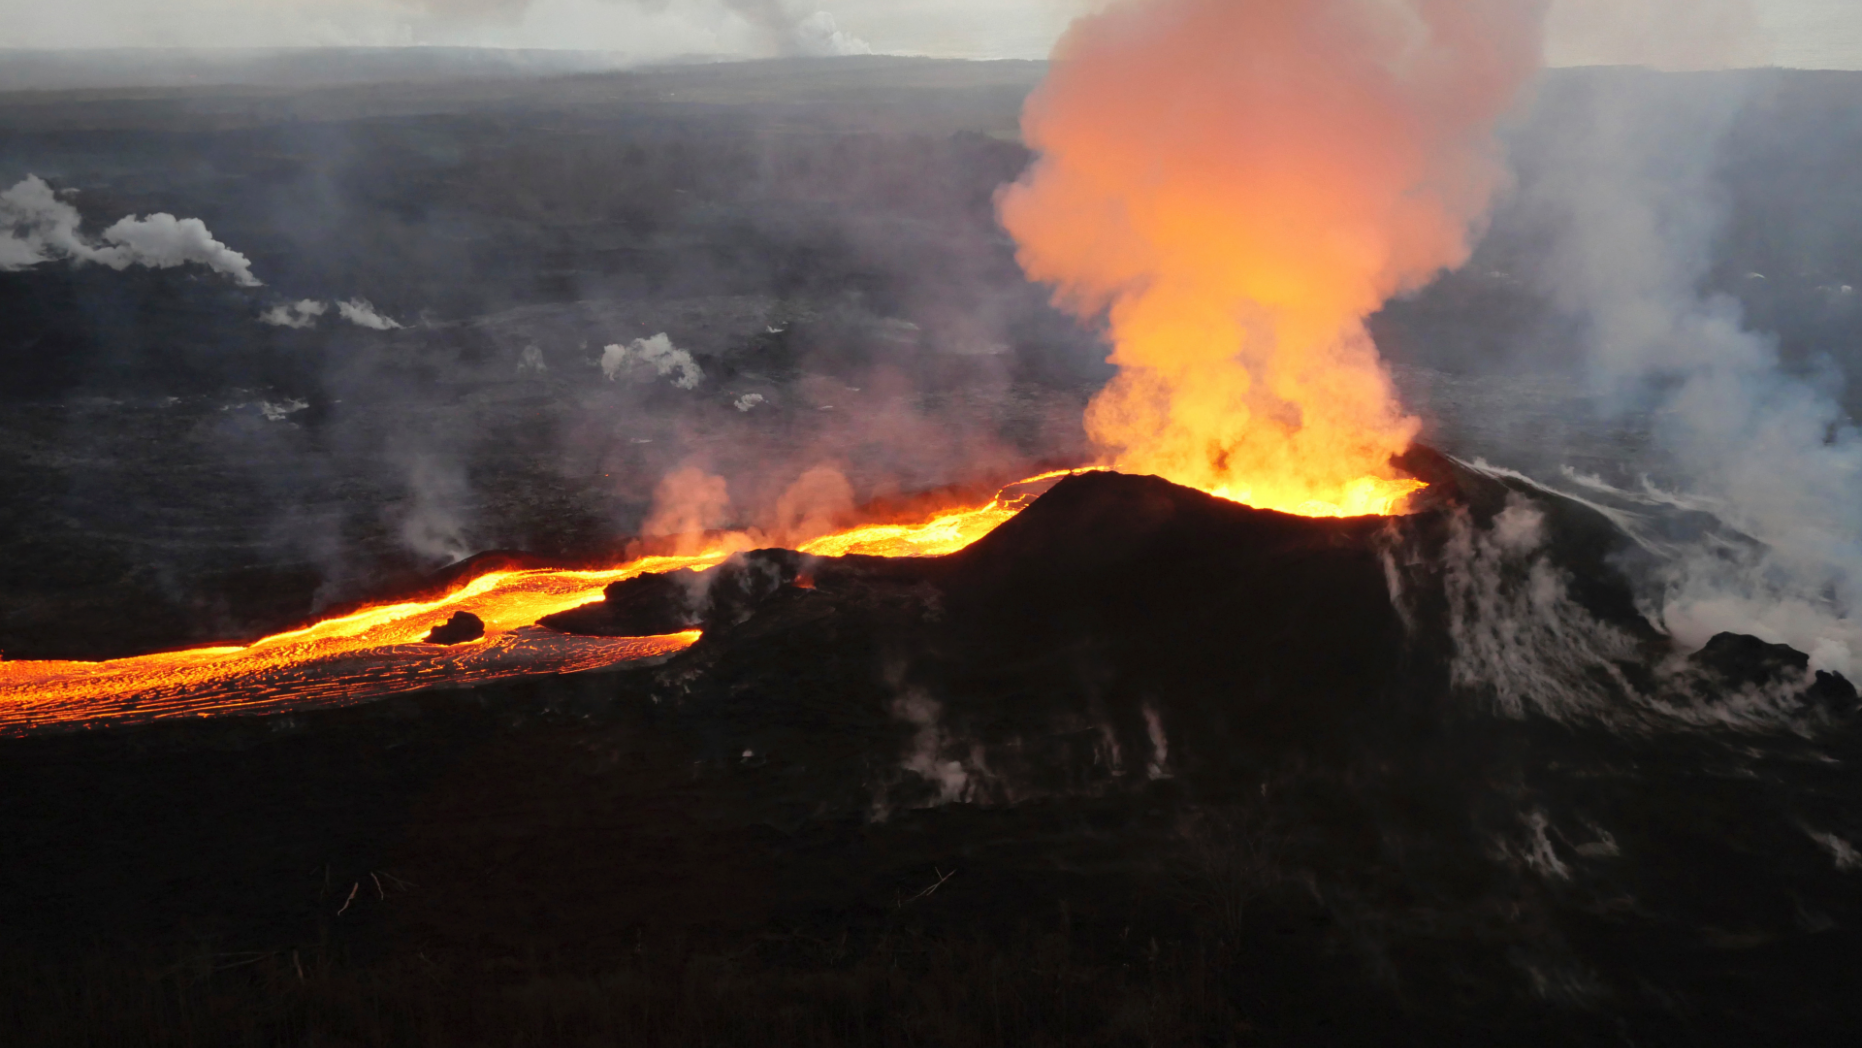 most recent volcano eruption 2018